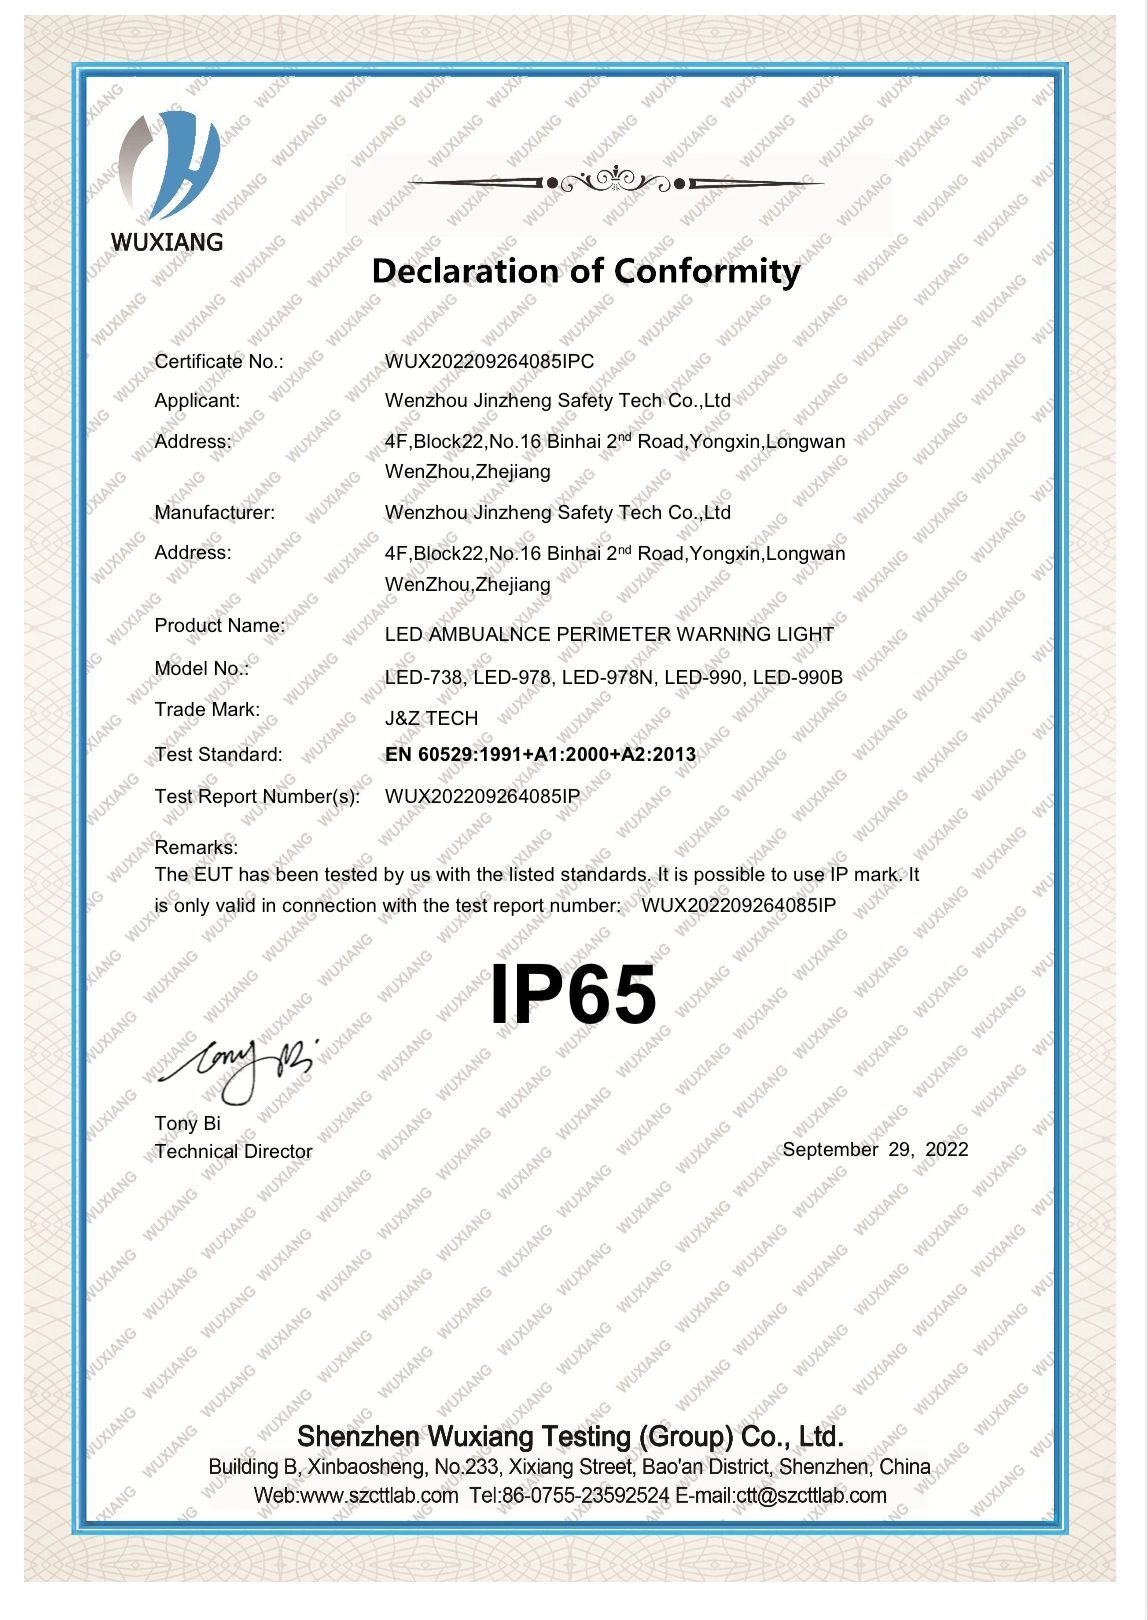 IP65 certification